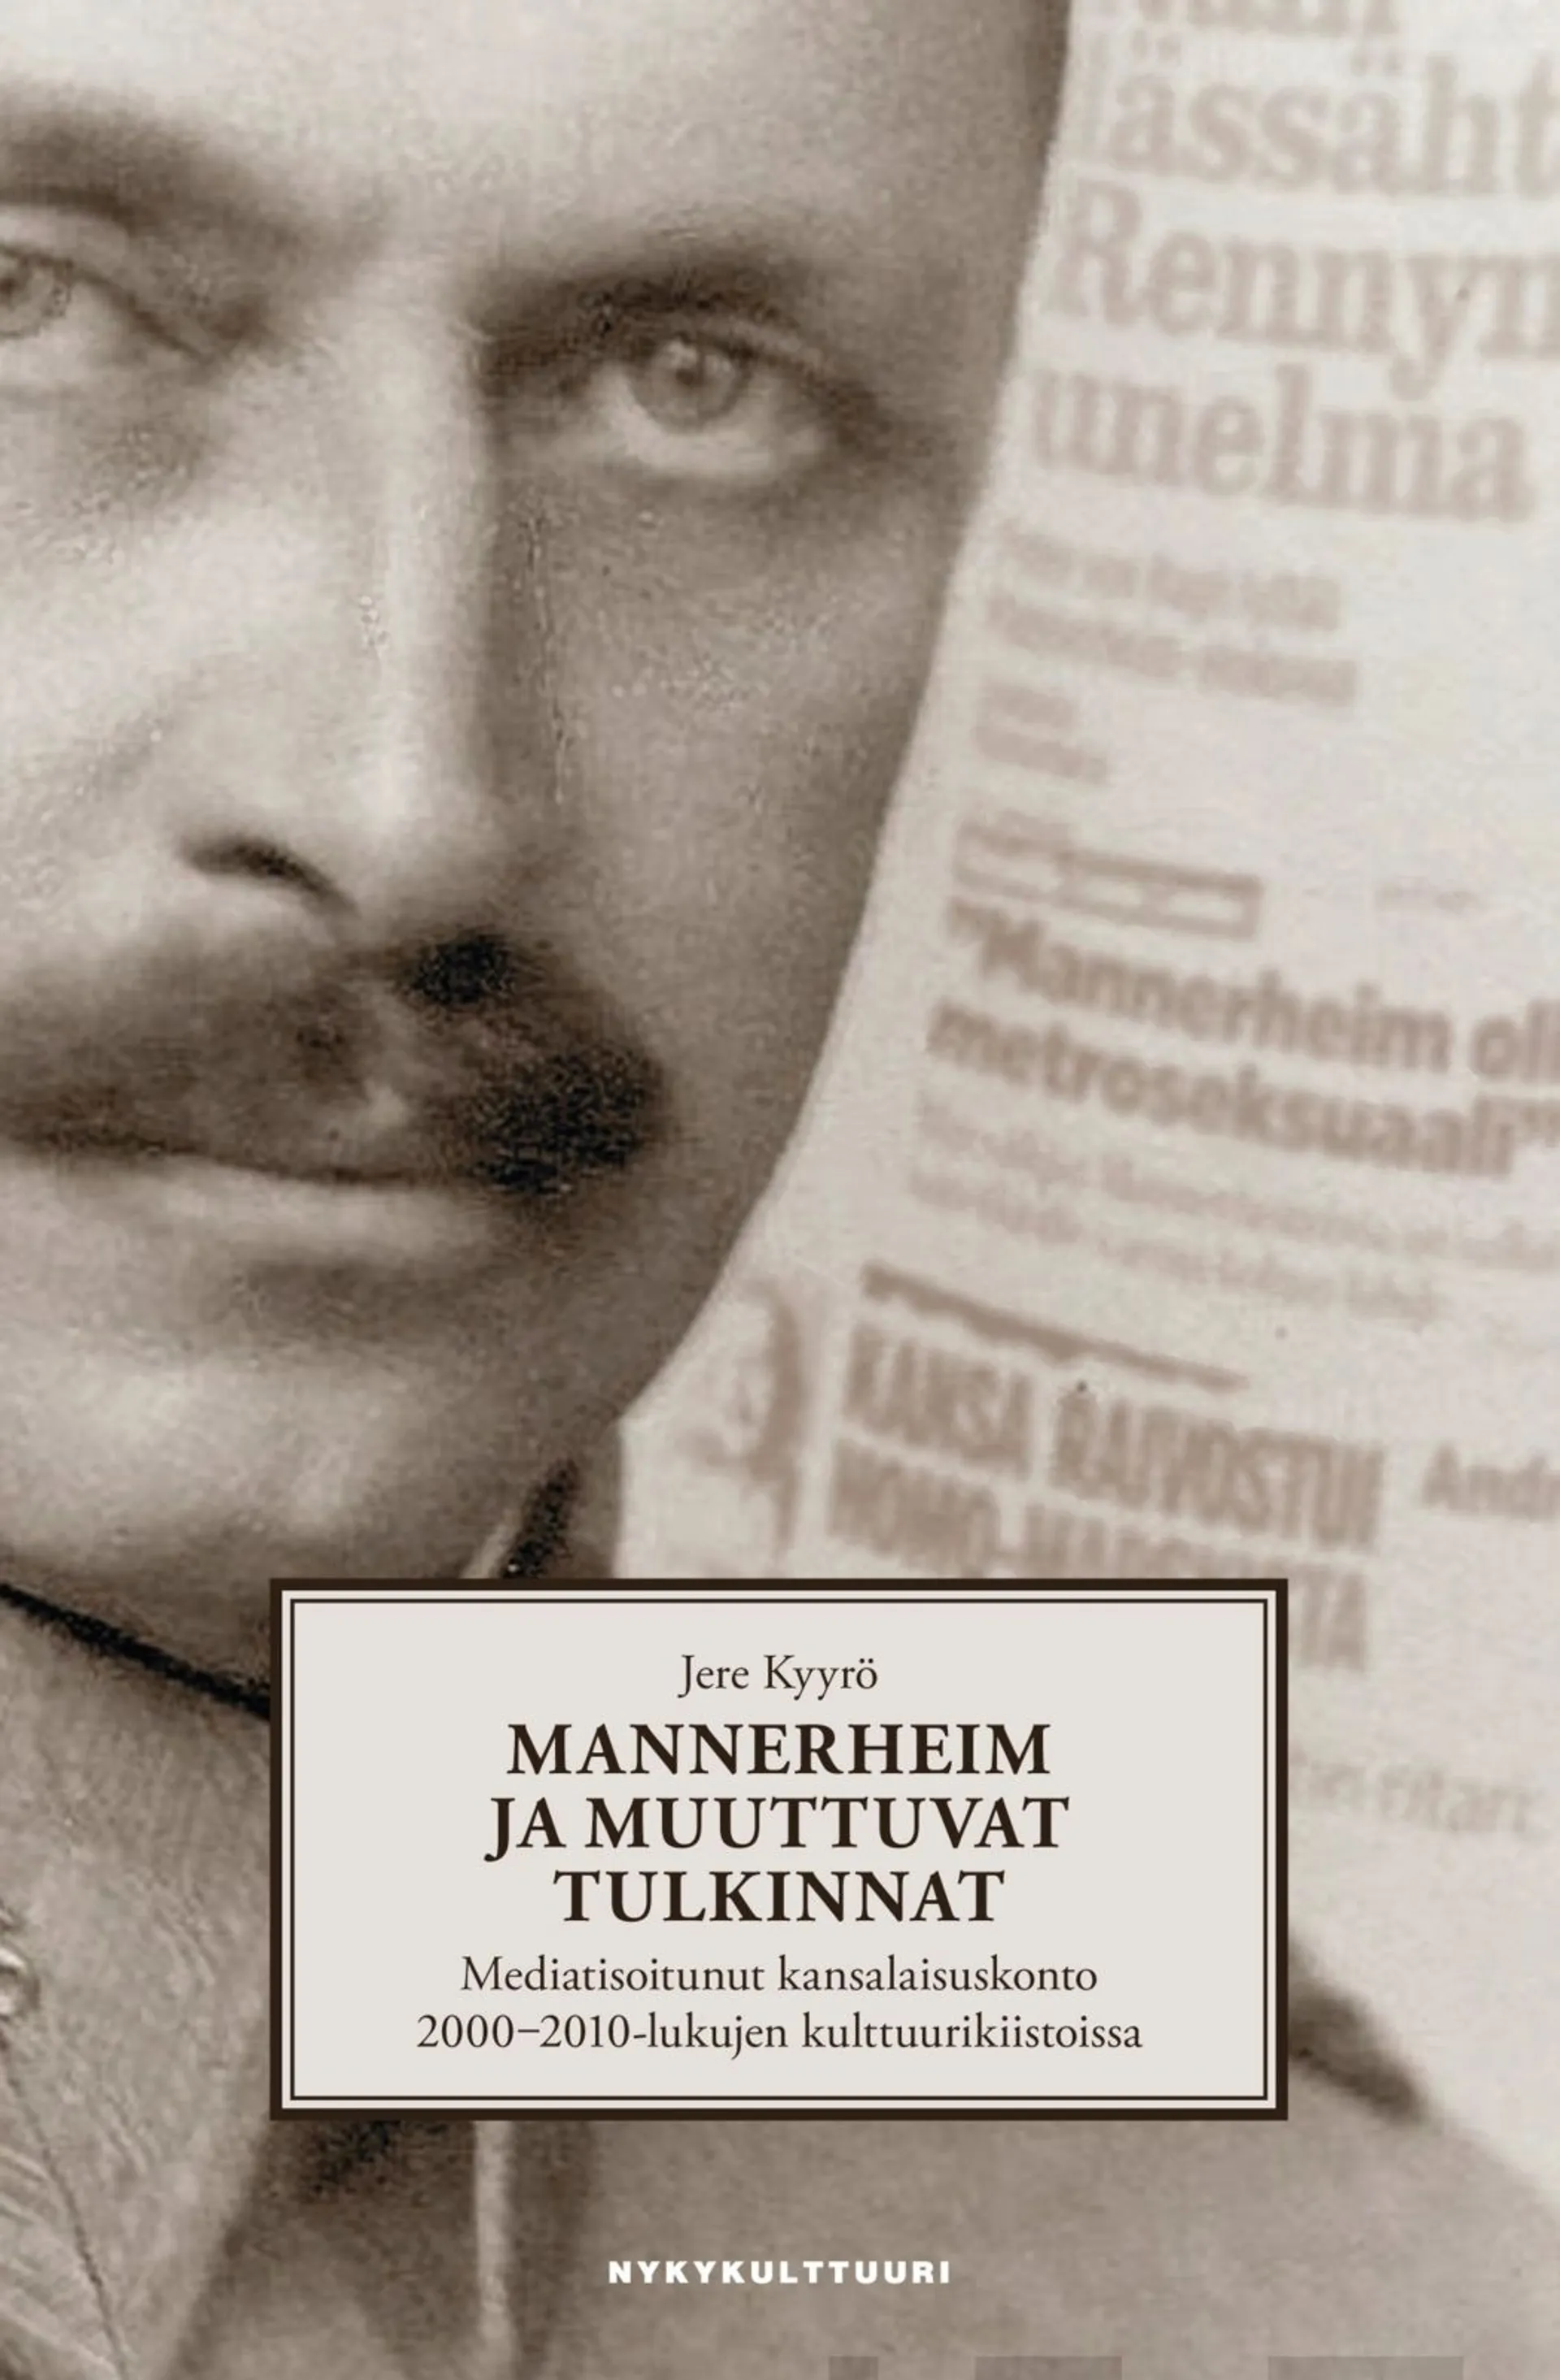 Kyyrö, Mannerheim ja muuttuvat tulkinnat - Mediatisoitunut kansalaisuskonto 2000-2010-lukujen kulttuurikiistoissa